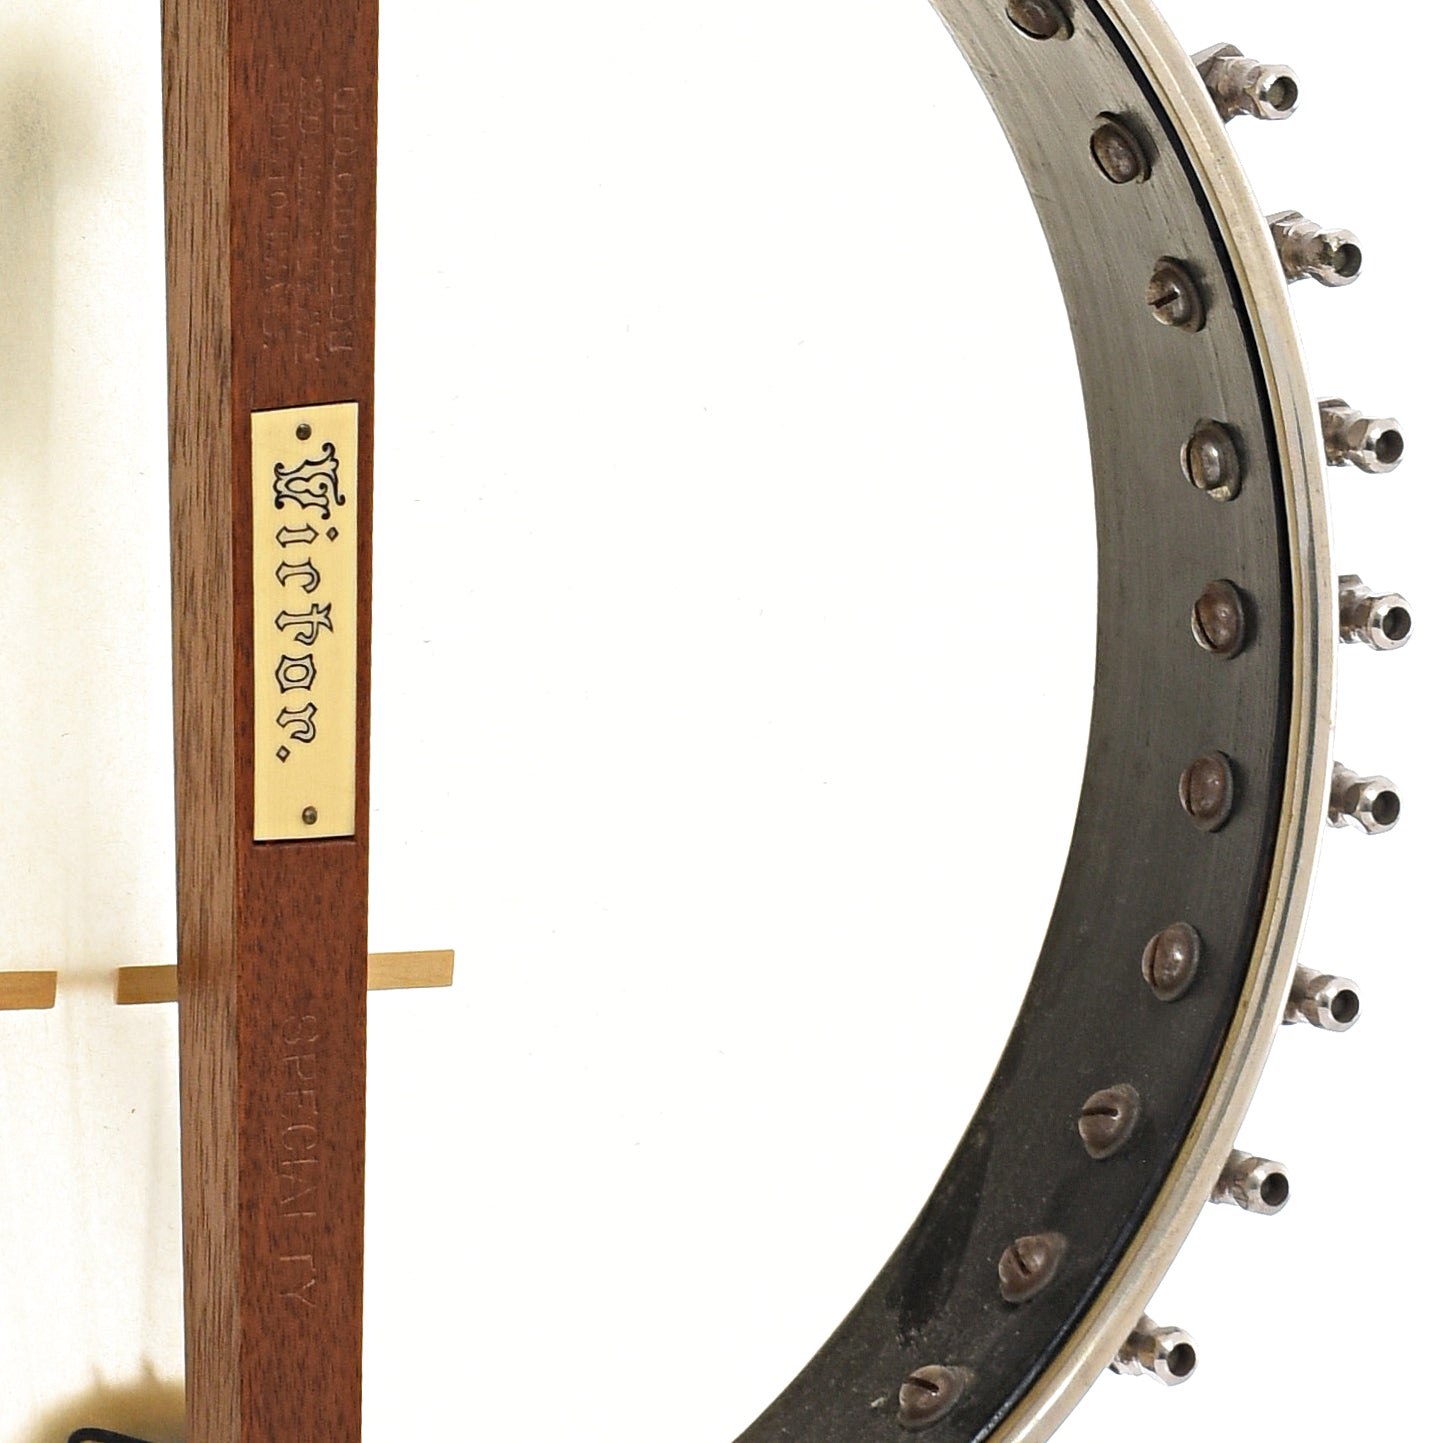 Inside rim of Dobson Victor No.2 Specialty Openback Banjo (c.1887)